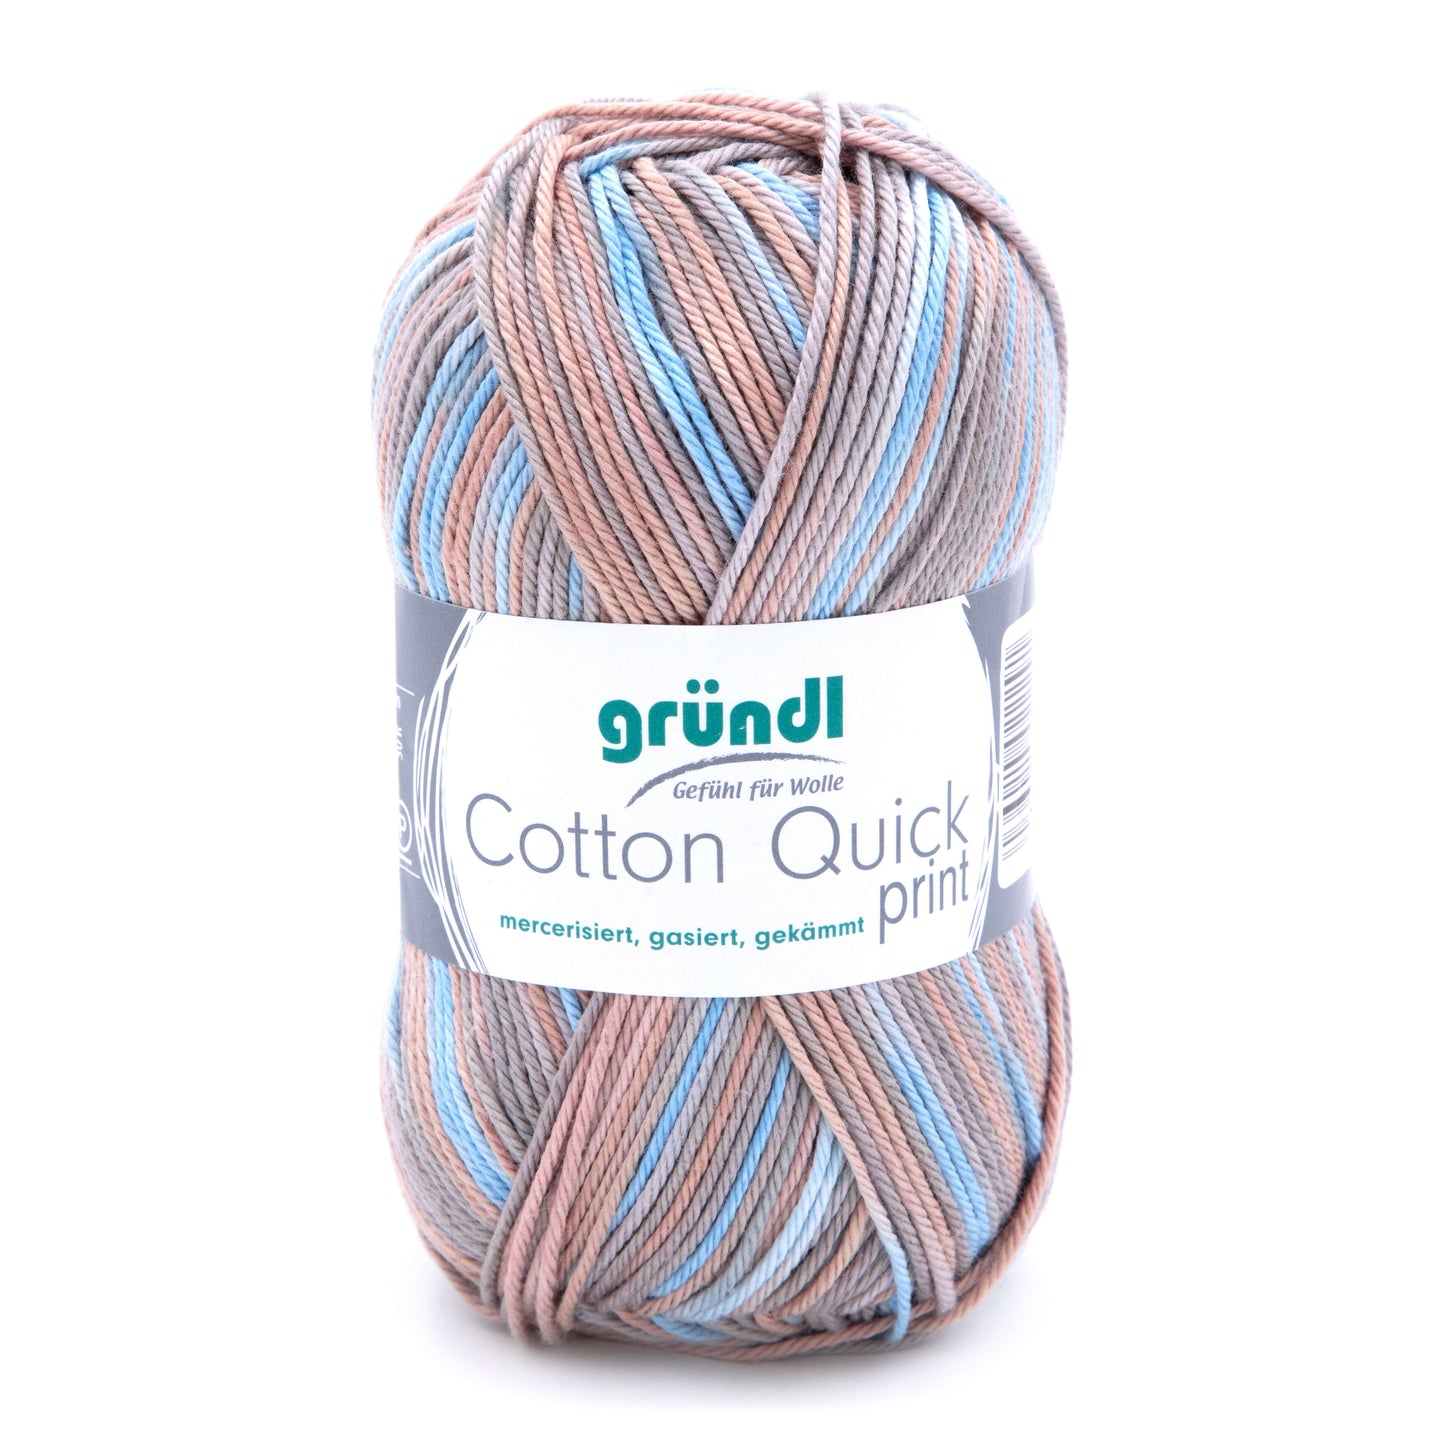 Gründl Cotton Quick print 100 % Baumwolle